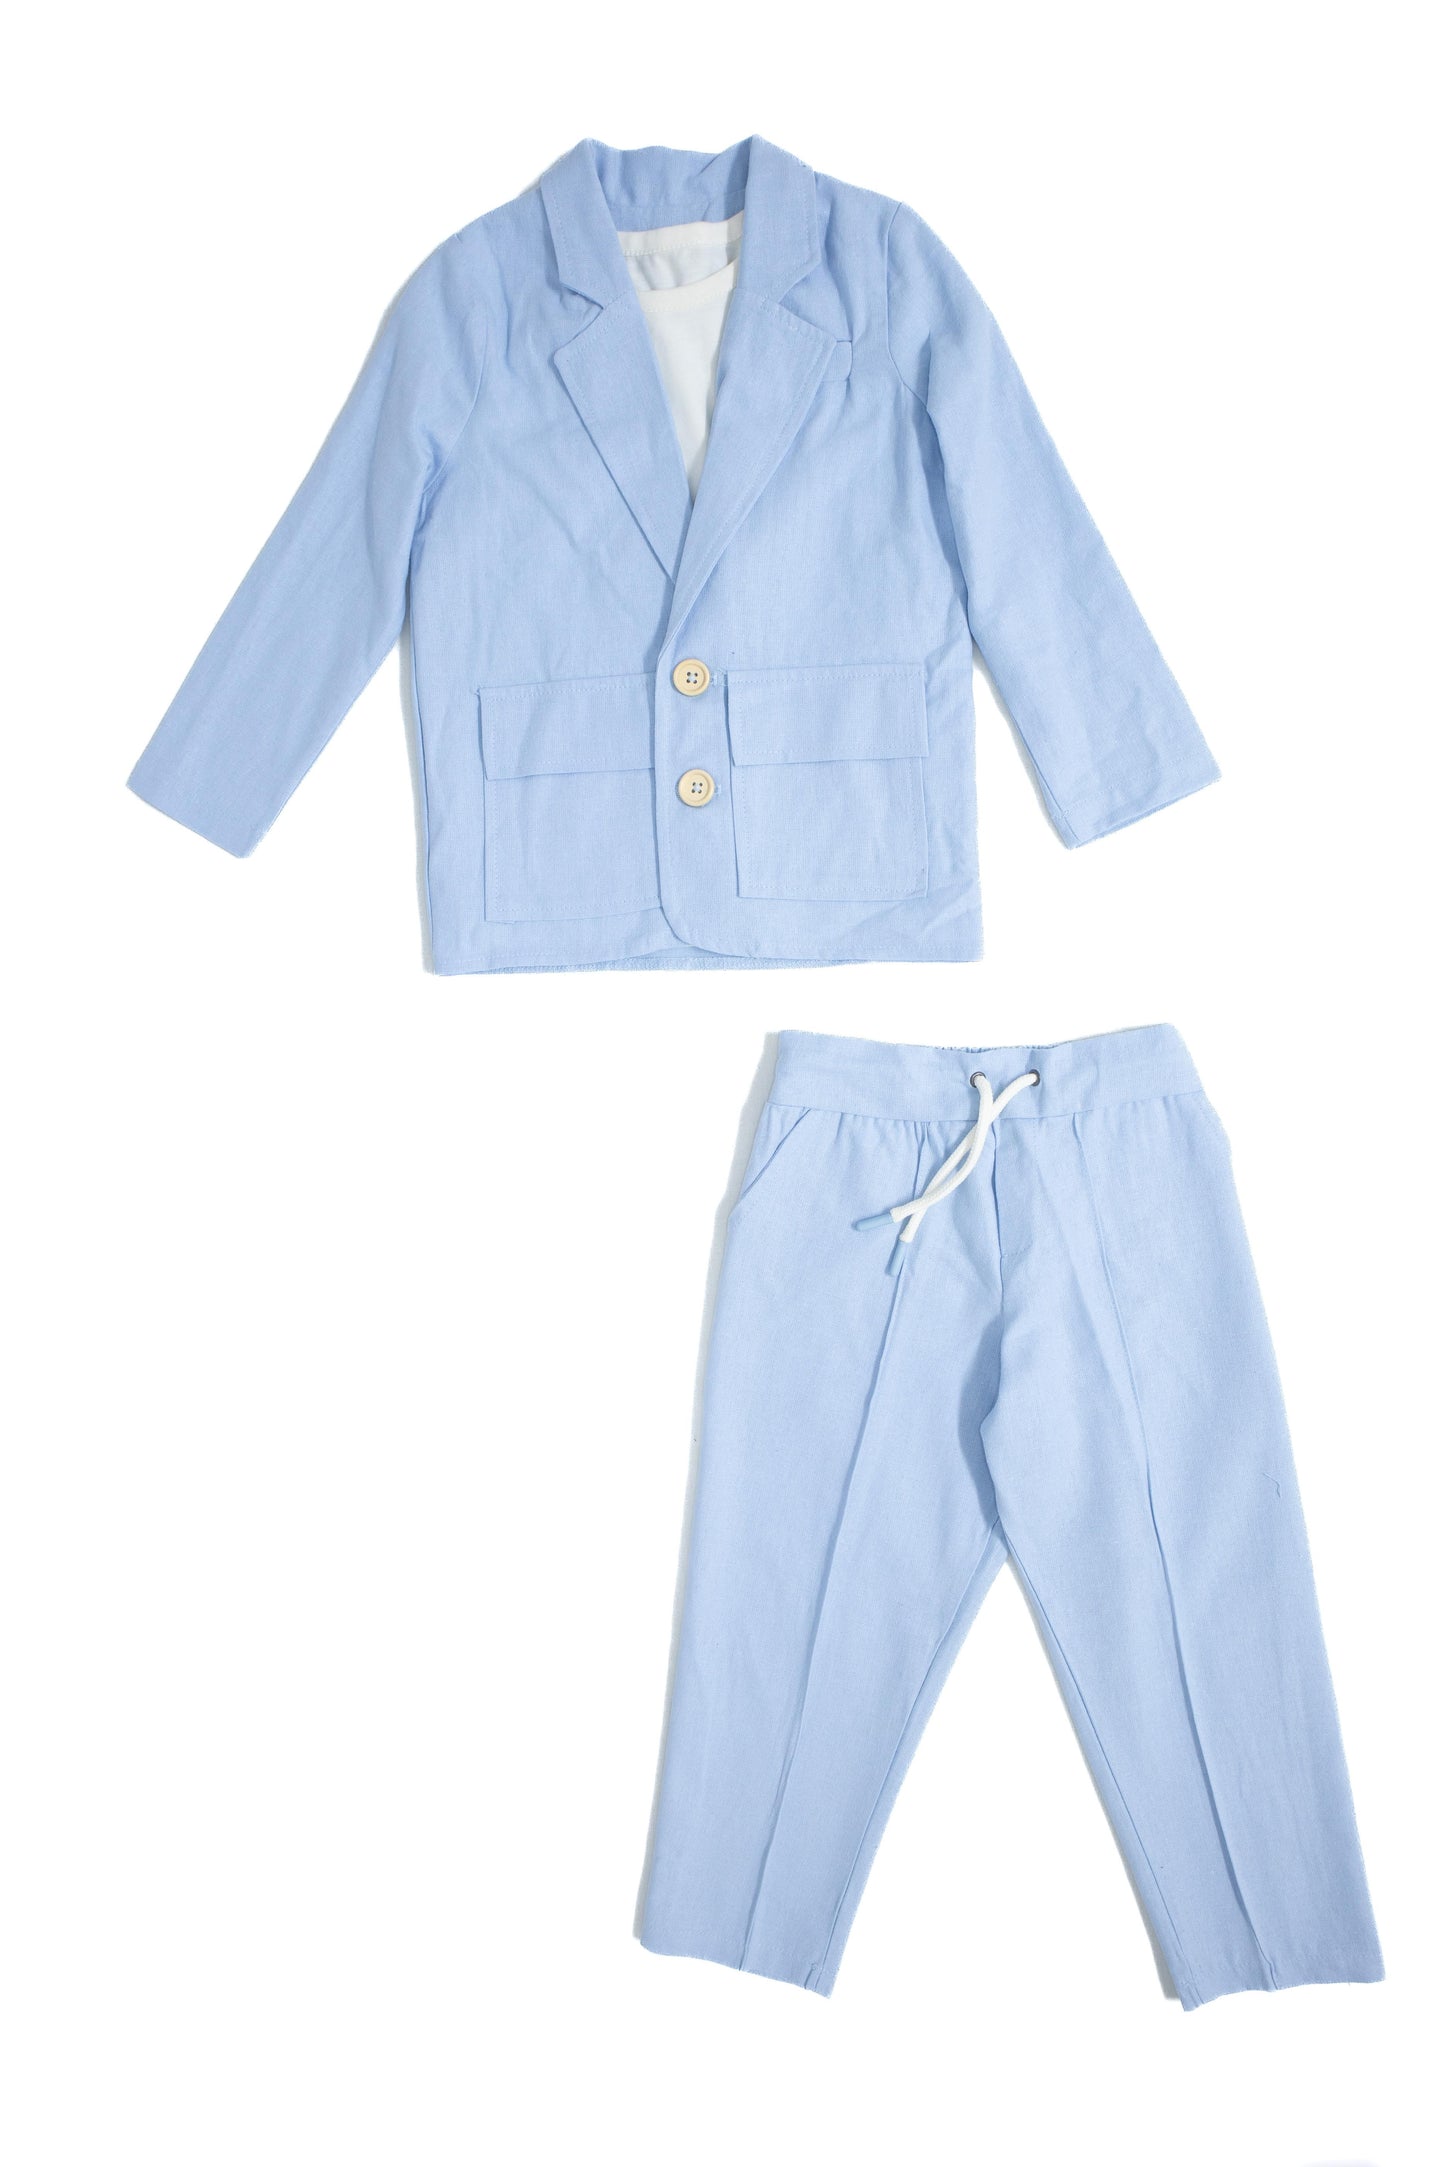 Children's 100% Natural Linen Fabric 3-Piece Suit Set